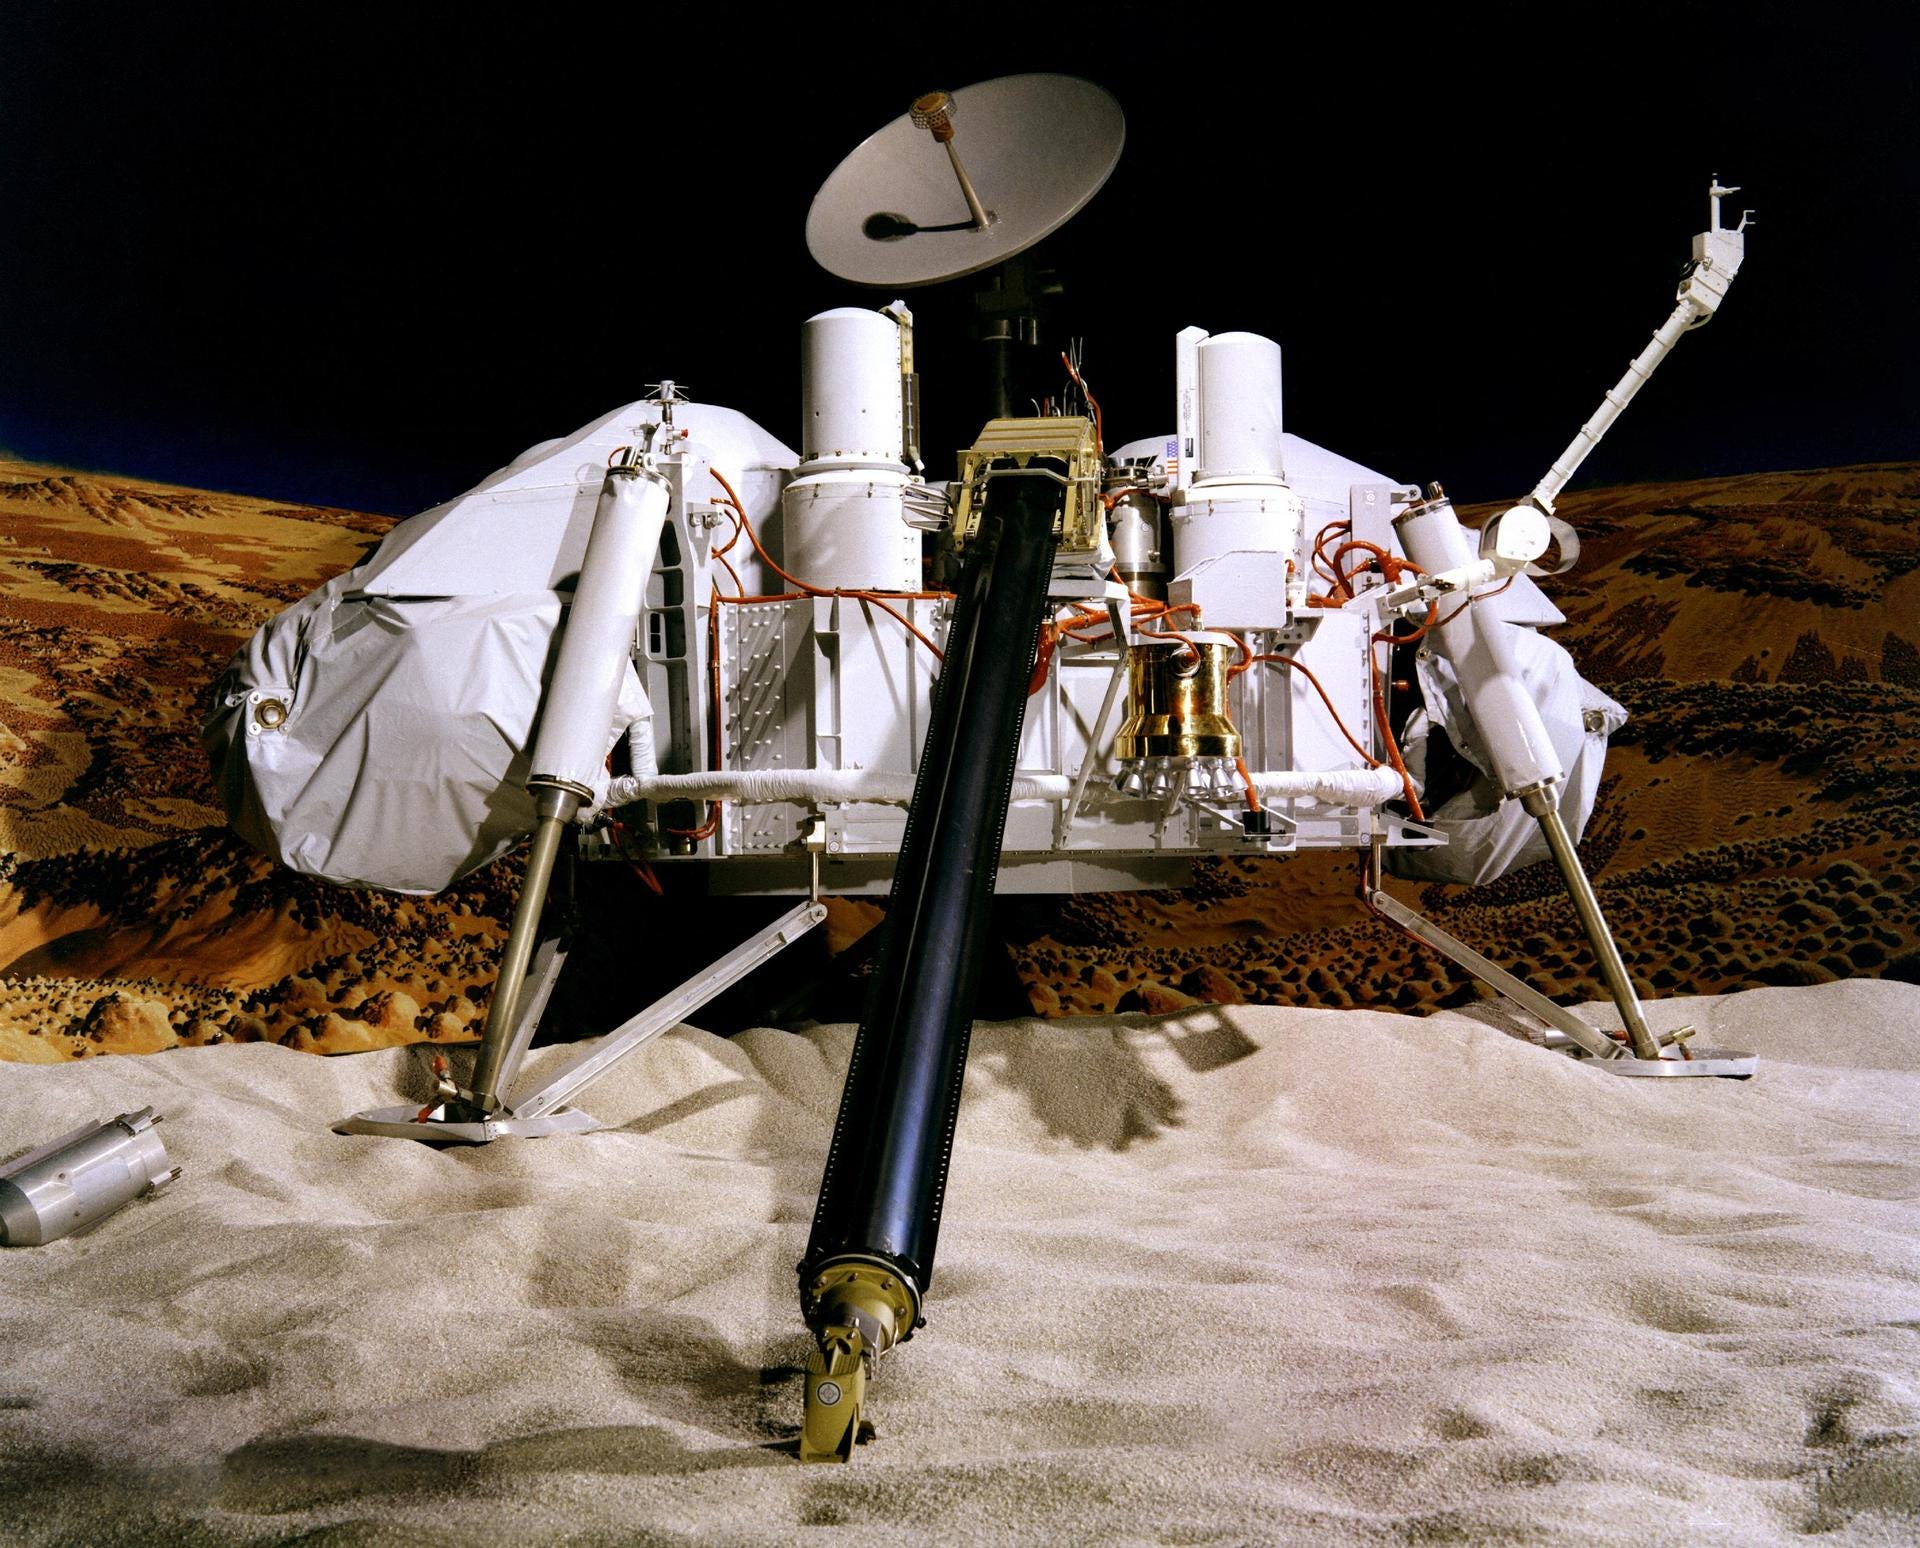 Viking Mars Lander Modell weiße Roboterplattform mit langen Metallarmen und einer Funkschüssel